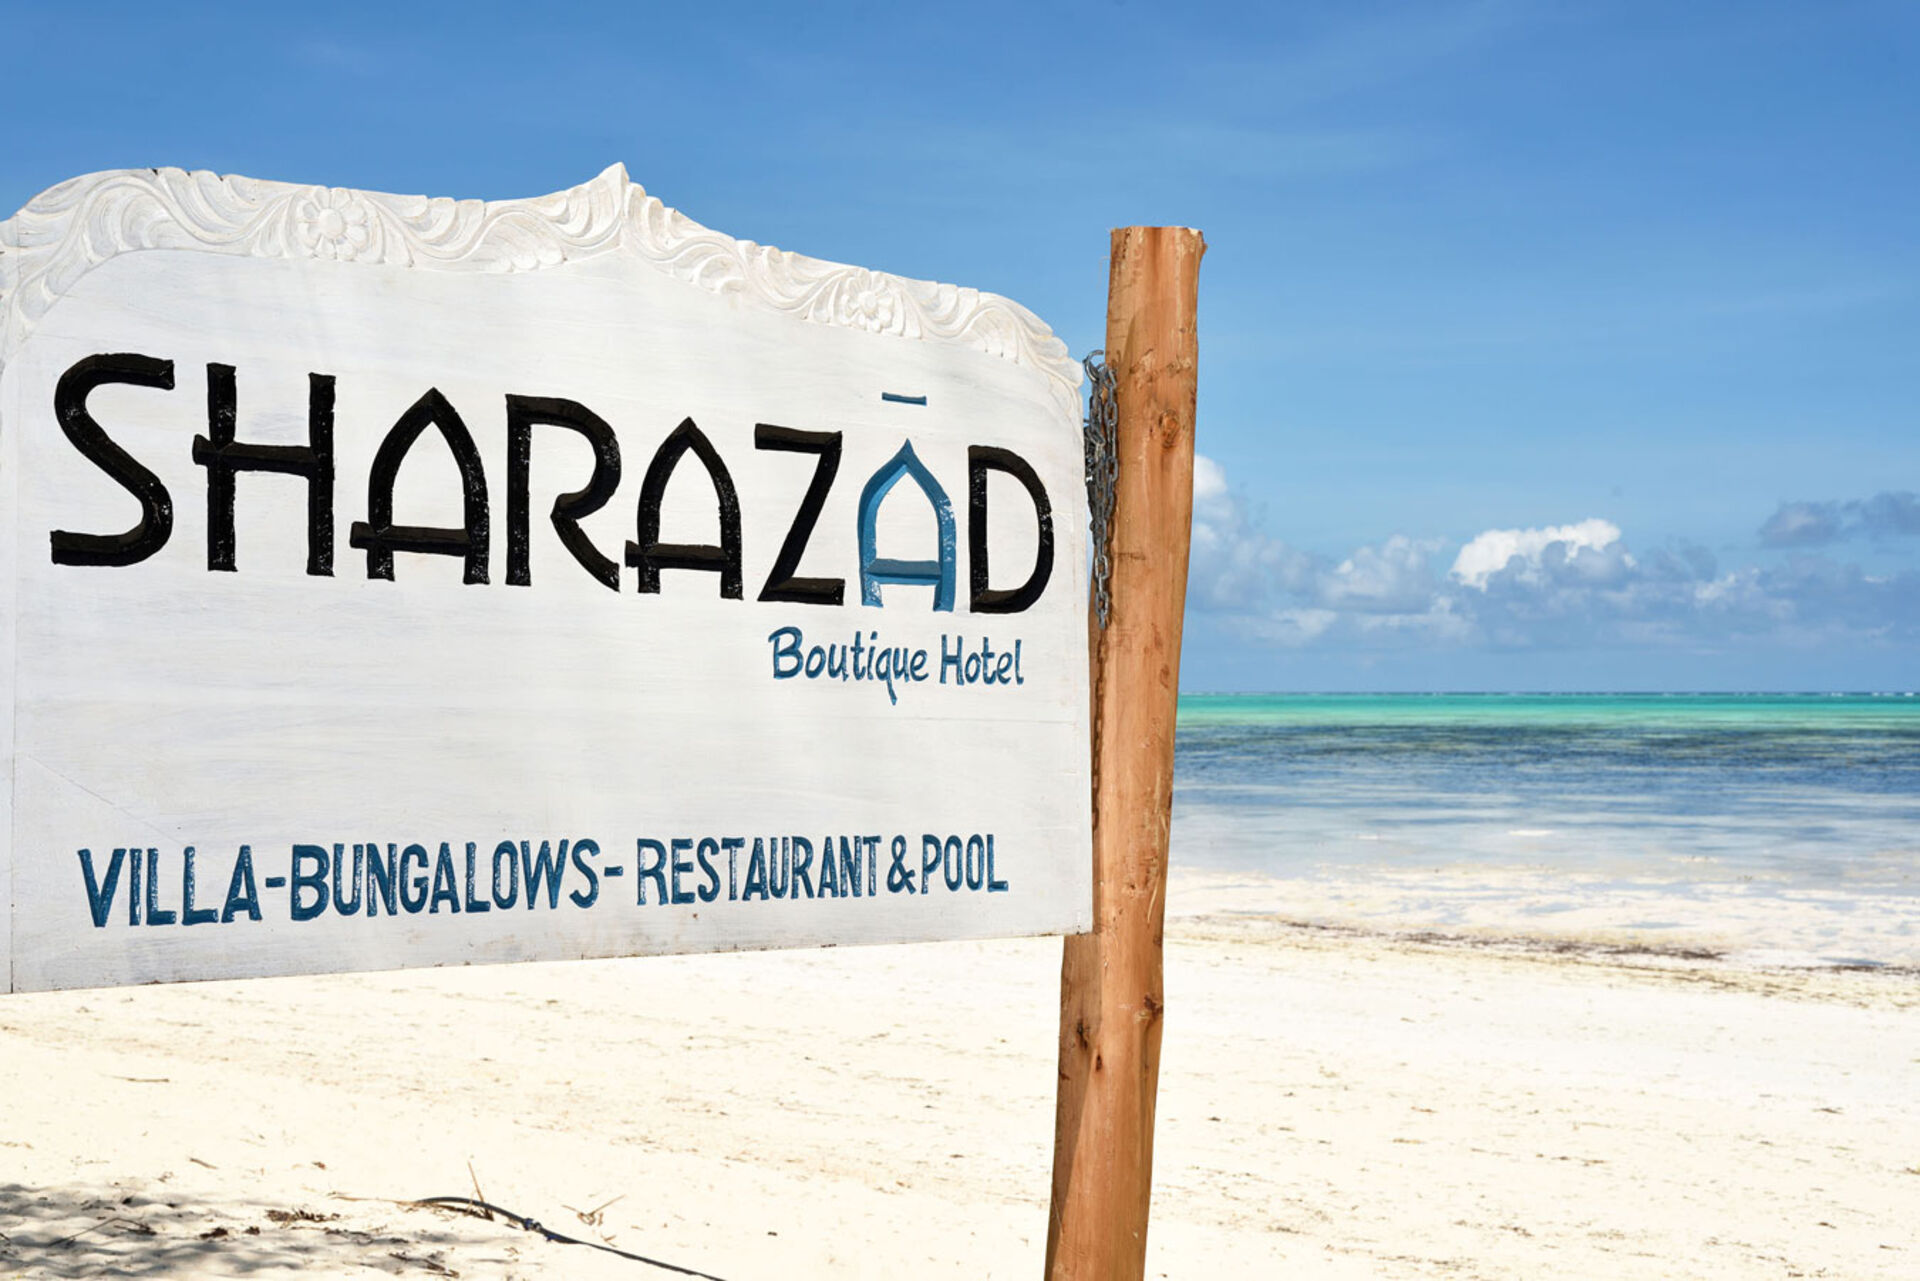 Beach hotels on Zanzibar